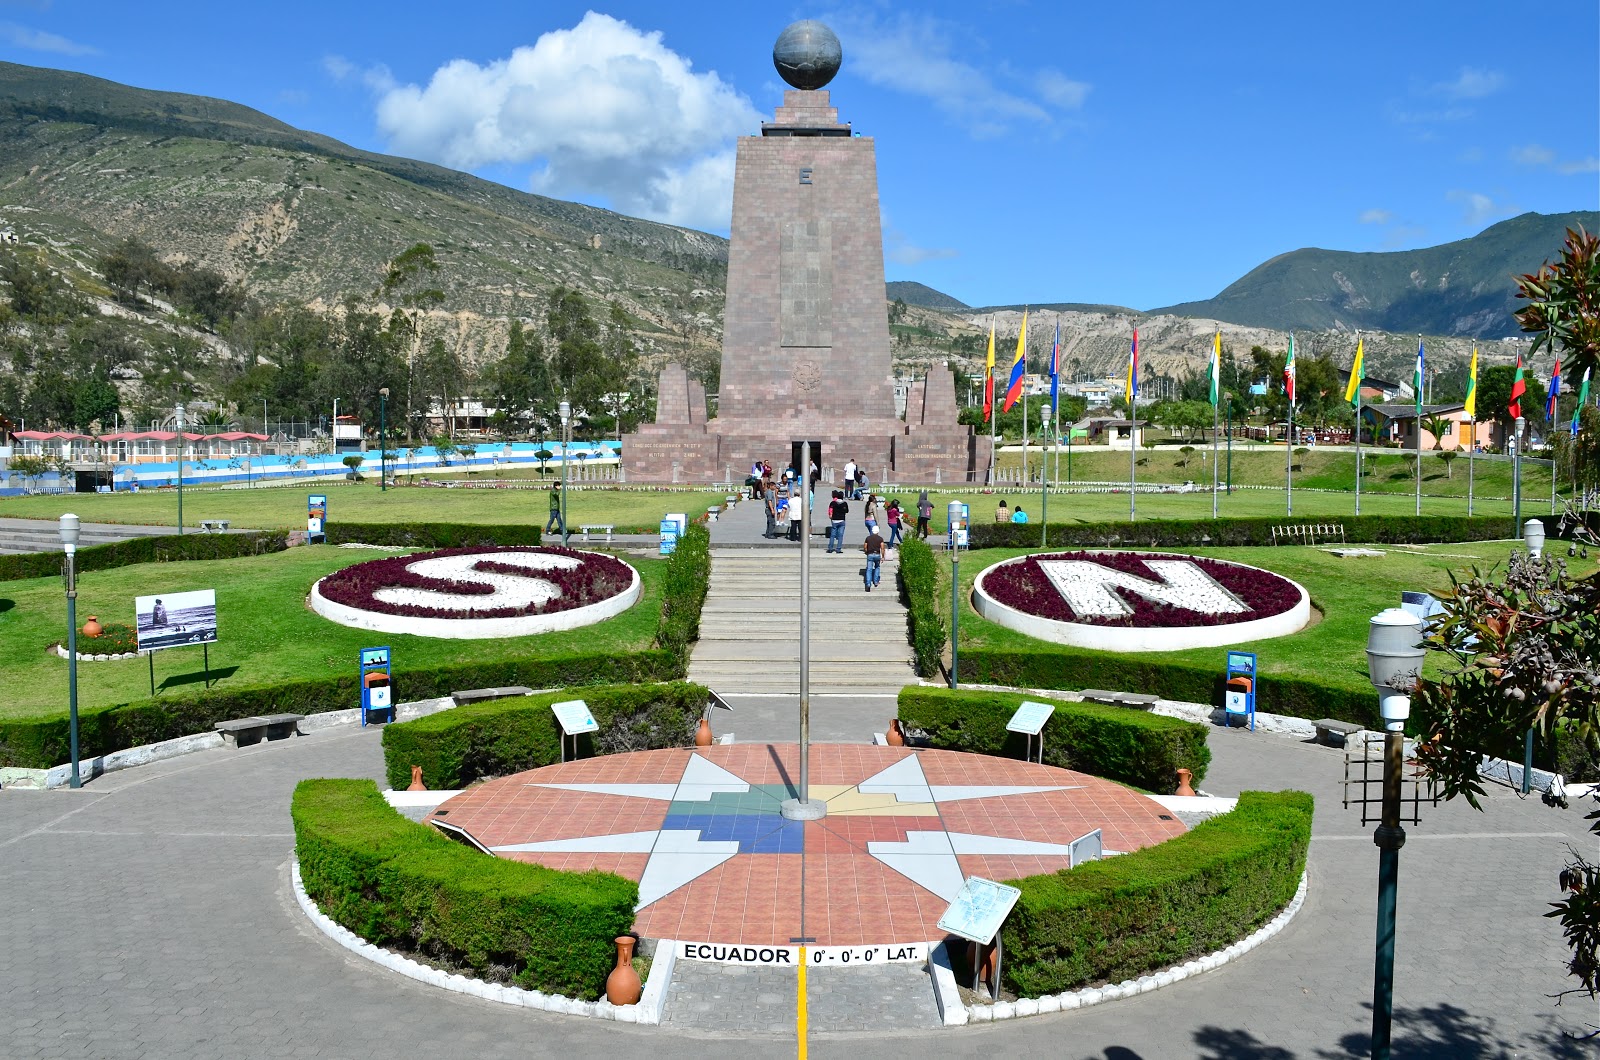 Monumento en La Mitad del Mundo, uno de los destinos turísticos de Ecuador